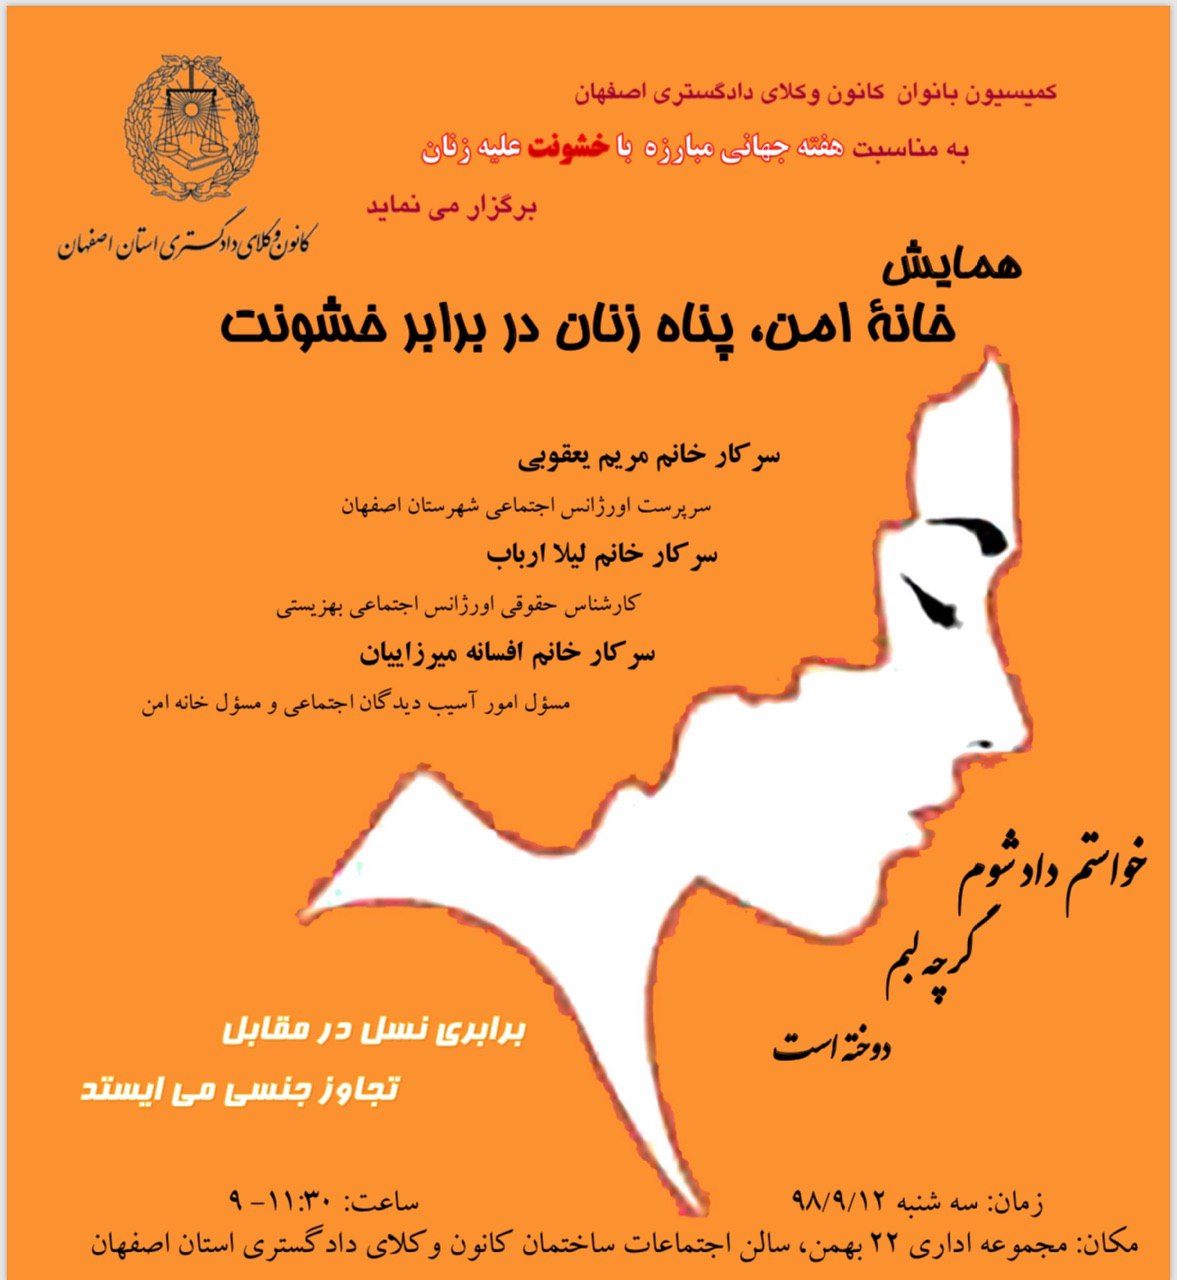 کمیسیون بانوان کانون وکلای دادگستری اصفهان به مناسبت هفته جهانی منع خشونت علیه زنان برگزار می كند